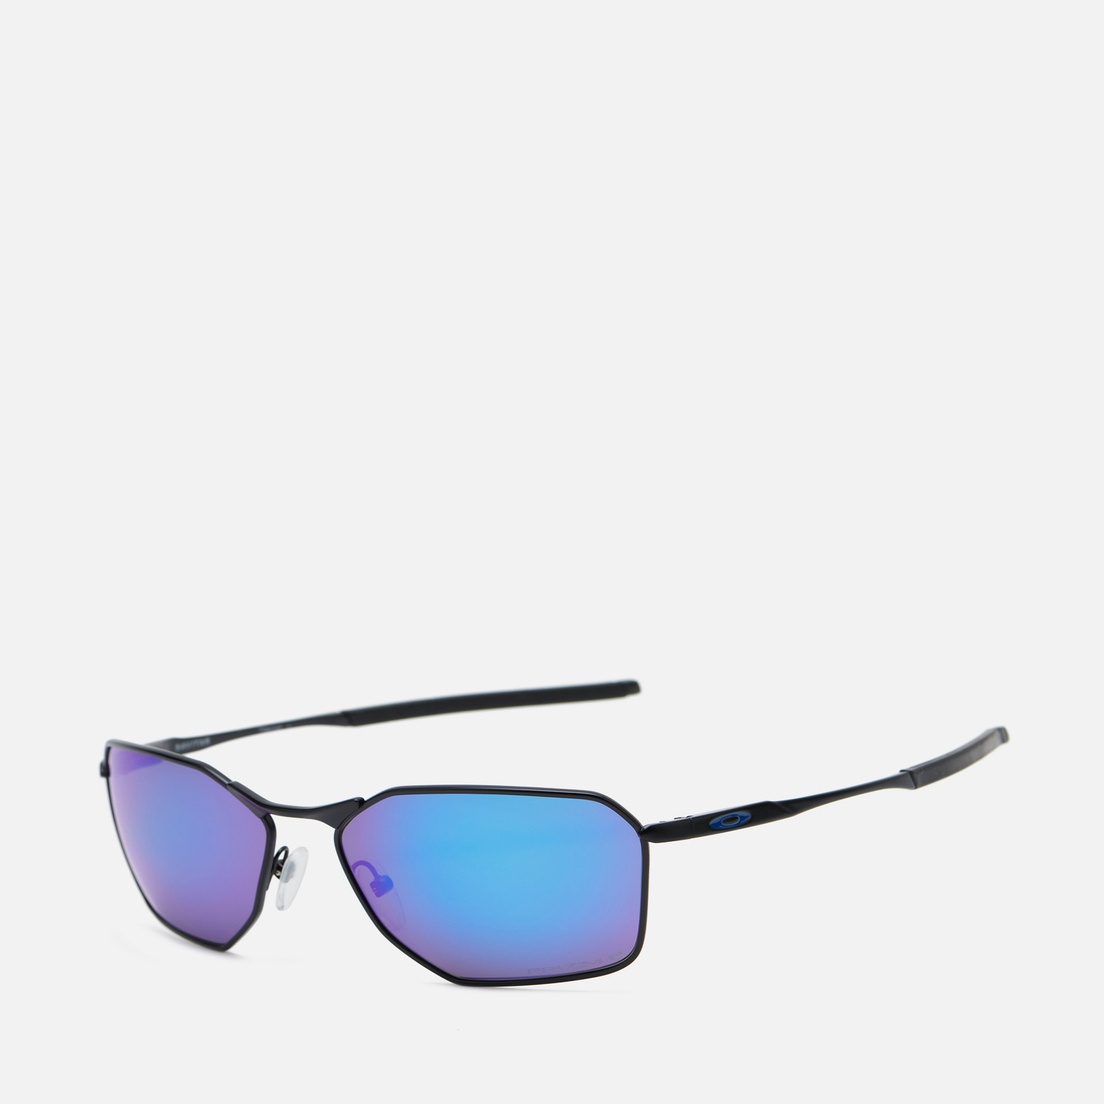 Oakley Солнцезащитные очки Savitar Polarized